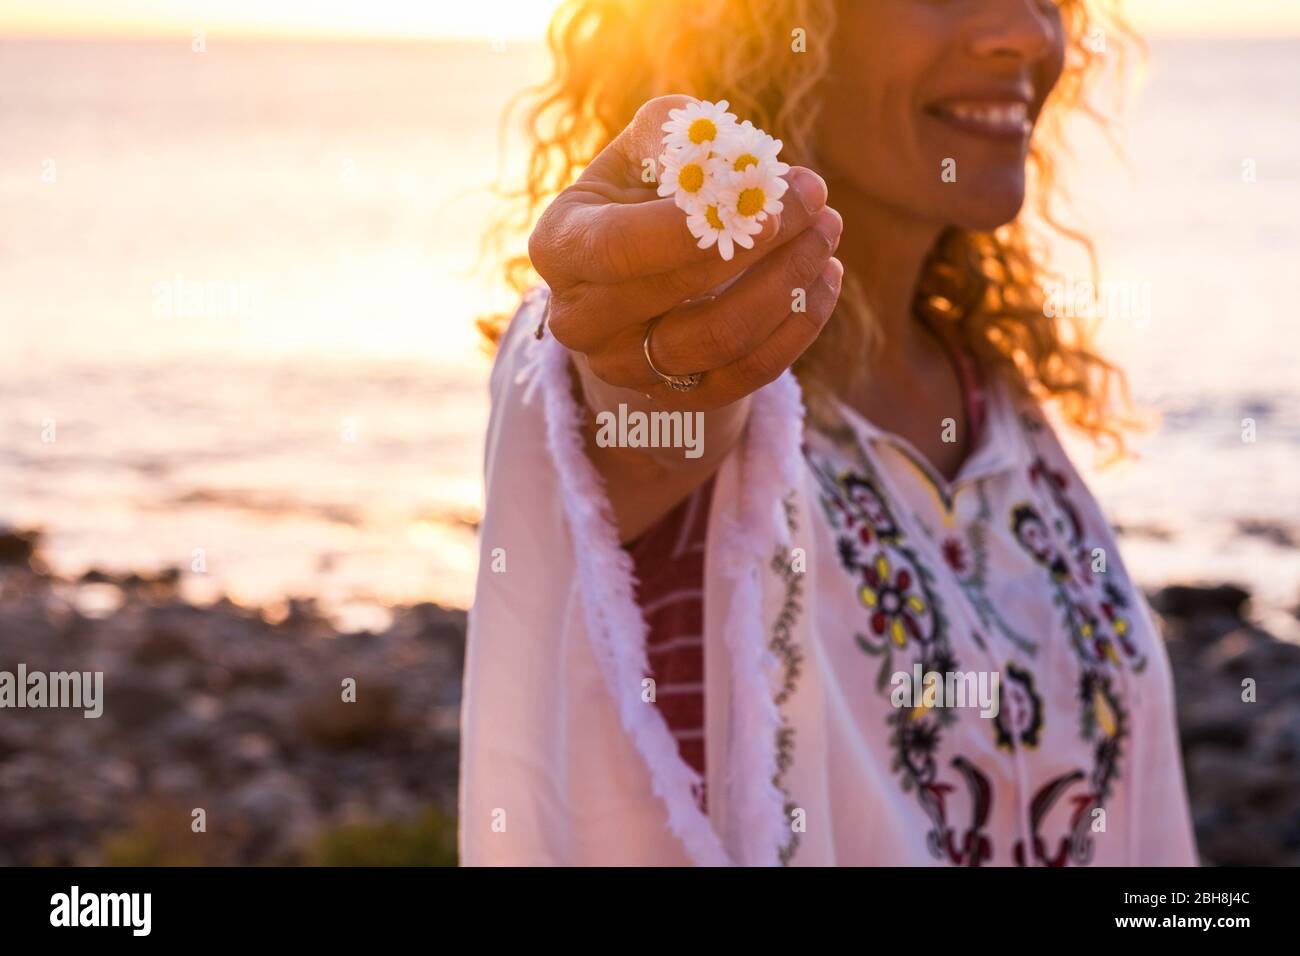 Fröhlich glücklich freee kaukasischen mittleren Alters Frau in Hippie Mode Kleidung nehmen eine schöne Gänseblümchen Blume - Fokus auf Blumen und Sonne Hintergrundbeleuchtung - Sonnenuntergang im Hintergrund für das Leben zu genießen Konzept Stockfoto